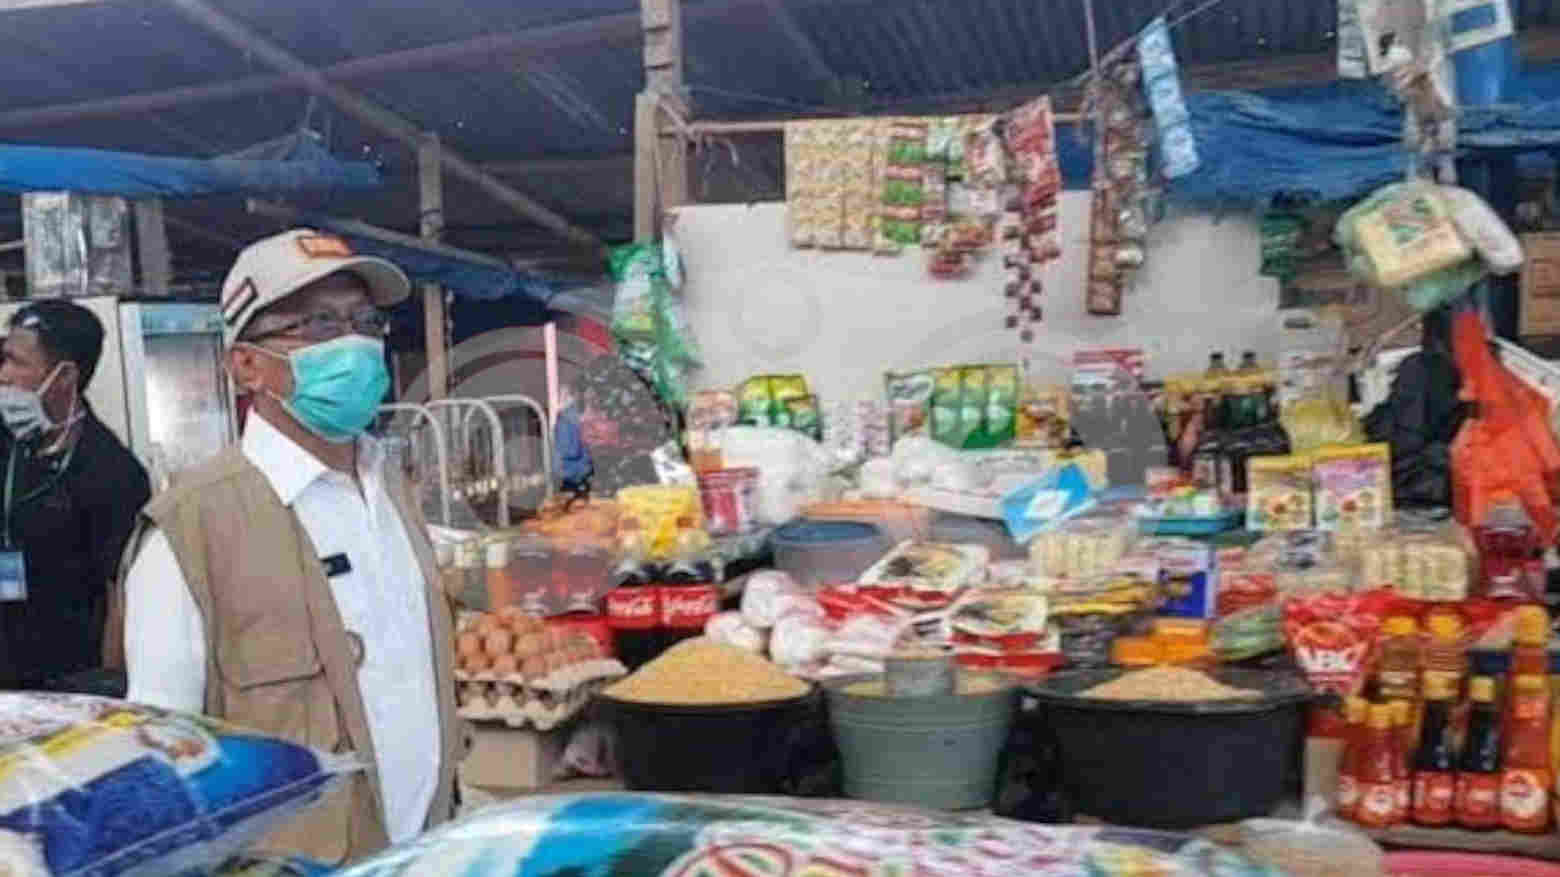 Intervensi Harga Jelang Ramadan, Disperindag Jadwalkan Operasi Pasar